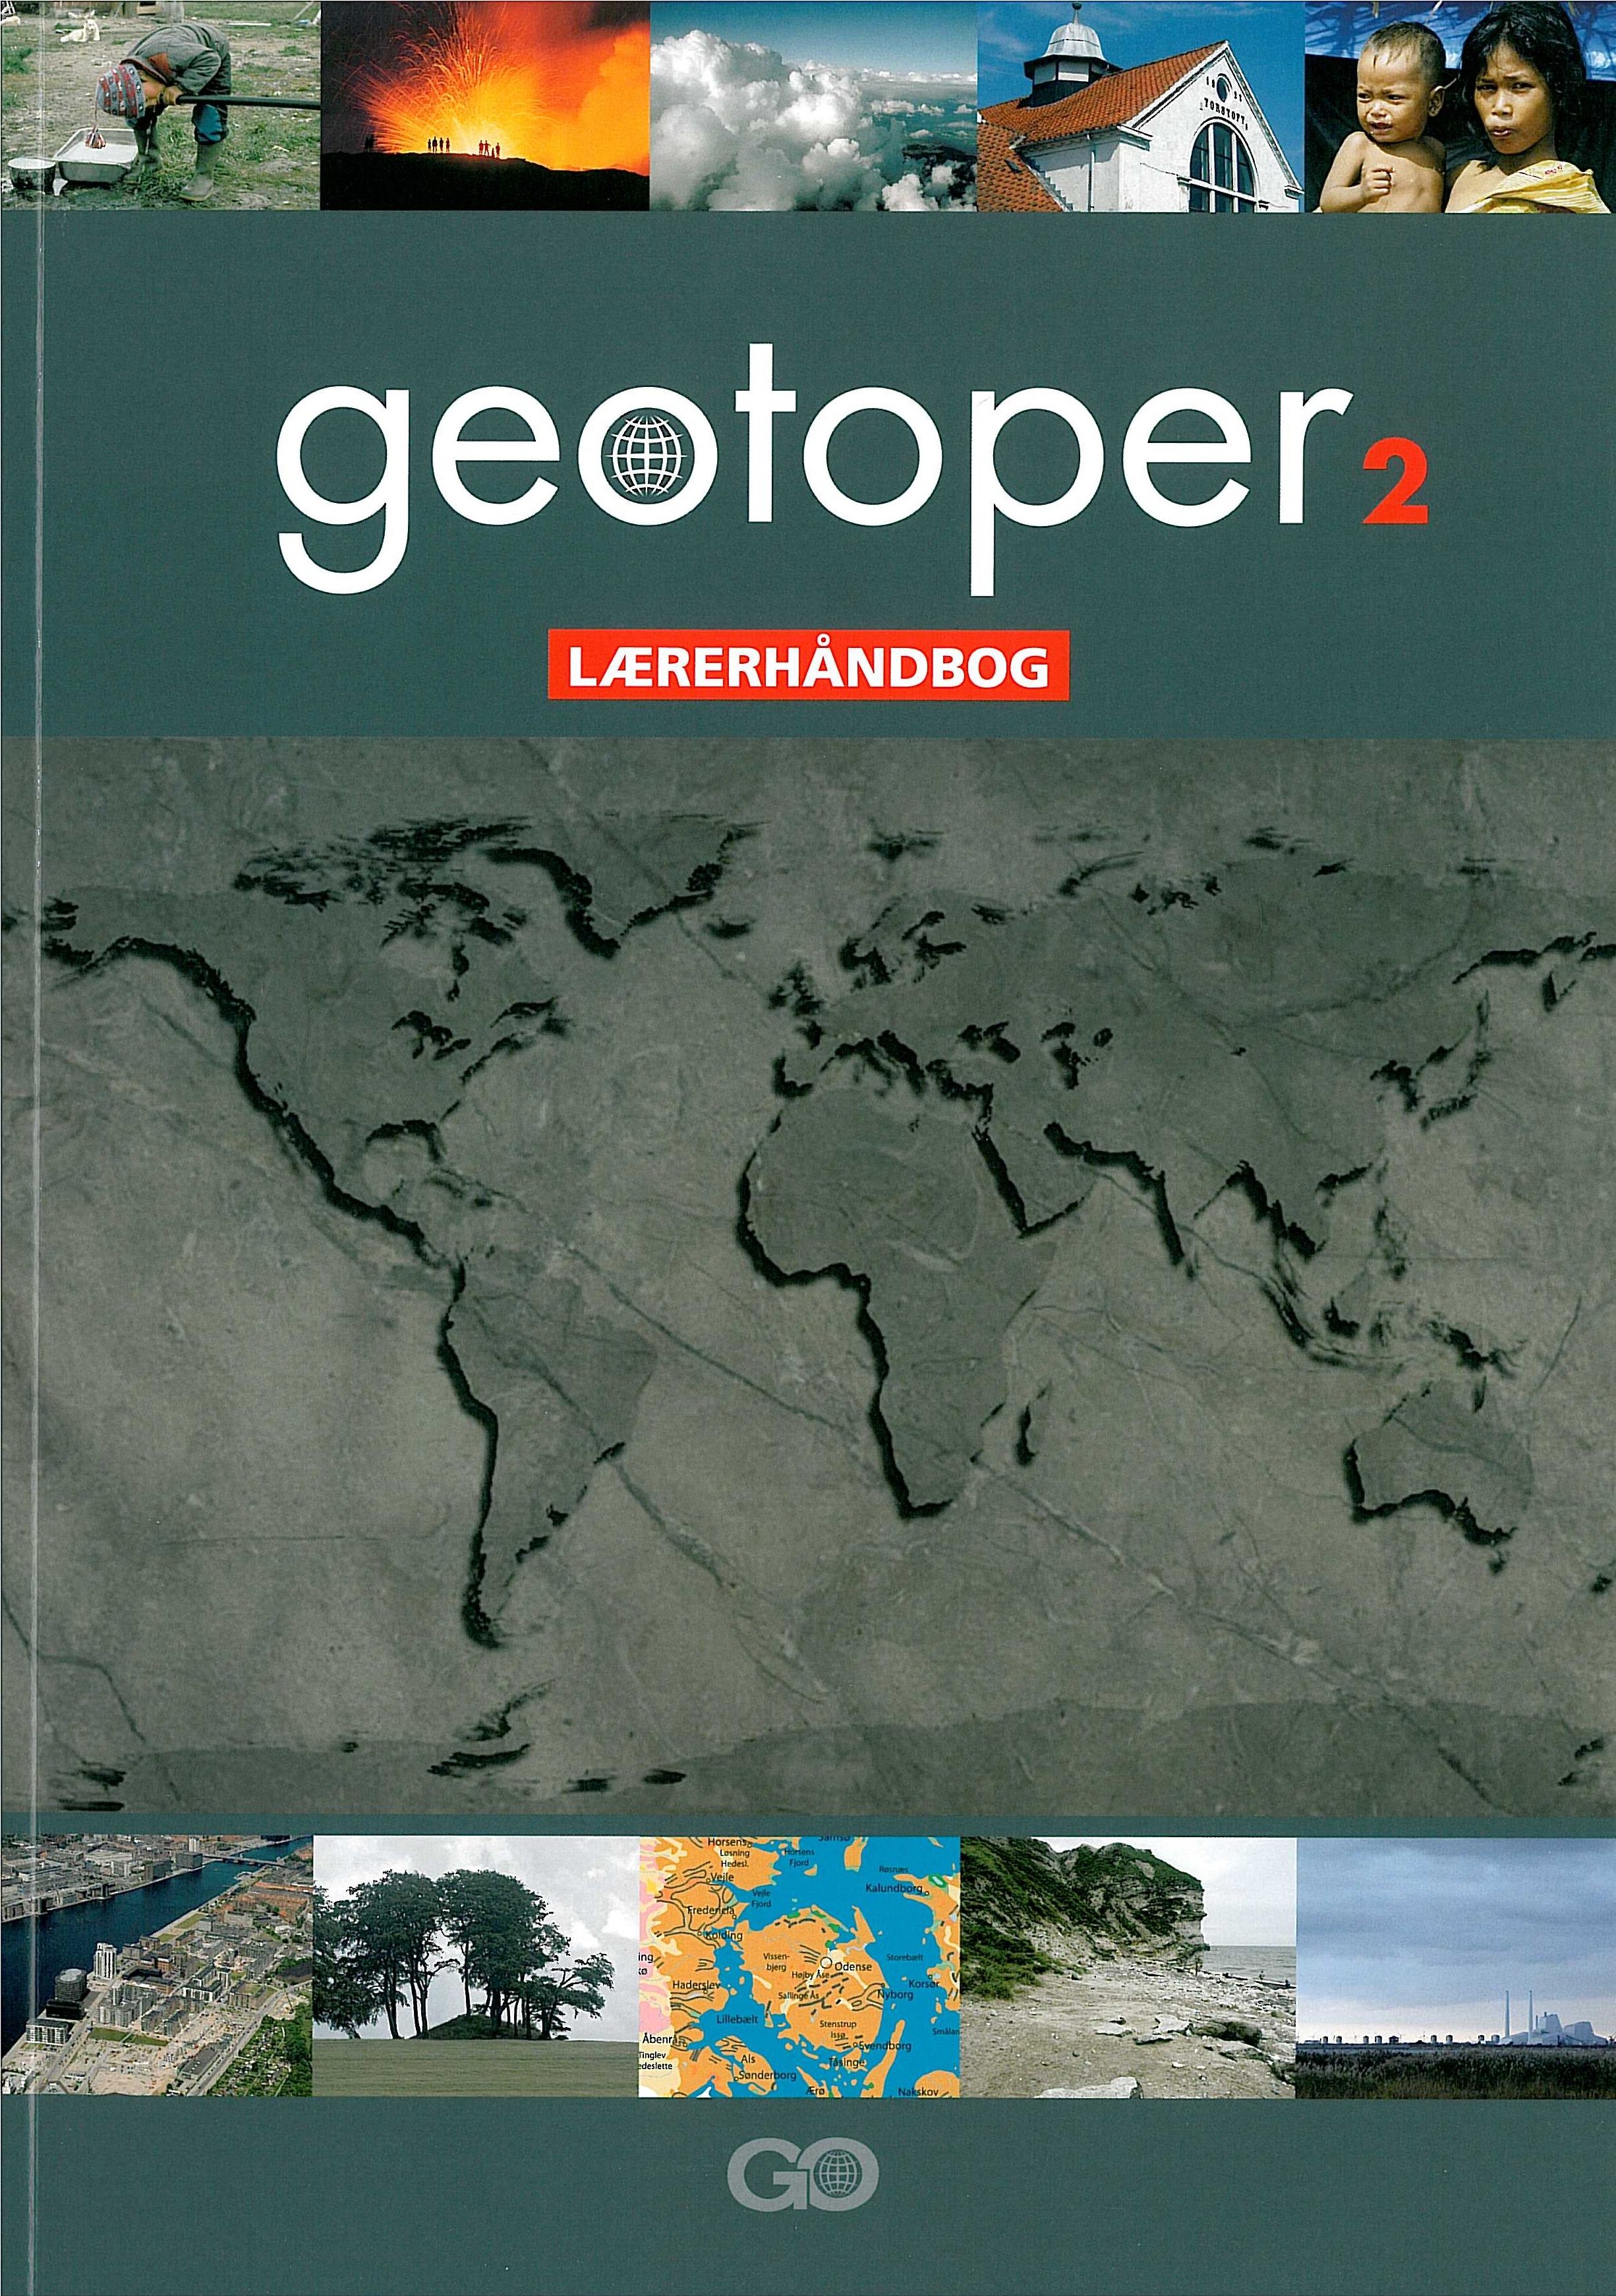 Geotoper 2 Lærerhåndbog er en del af et undervisningssystem til grundskolens undervisning i geografi i 7. til 9. klasse.